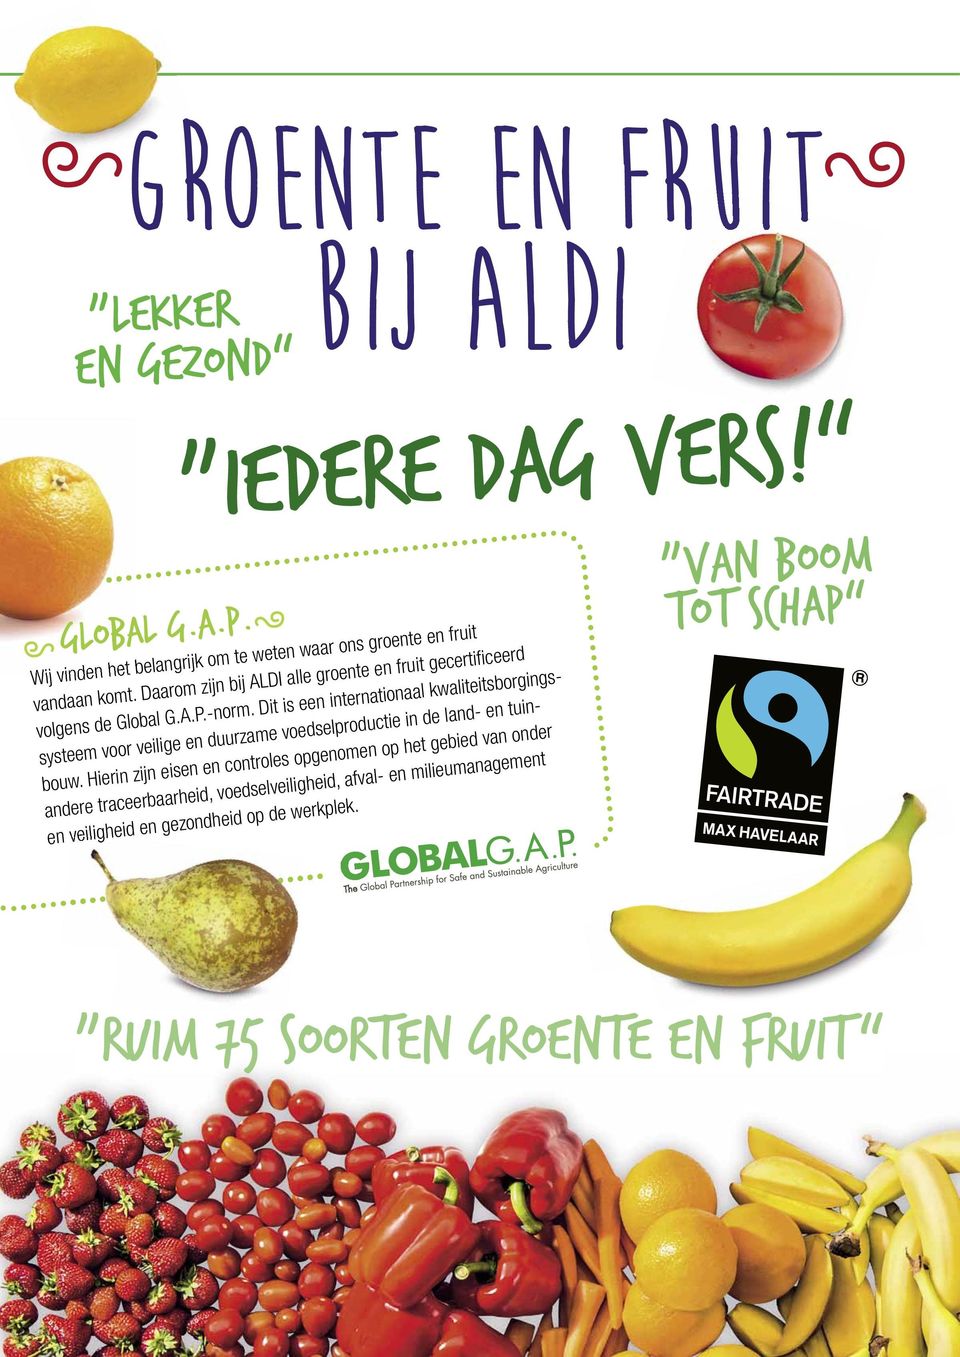 Daarom zijn bij ALDI alle groente en fruit gecertifi ceerd volgens de Global G.A.P.-norm.